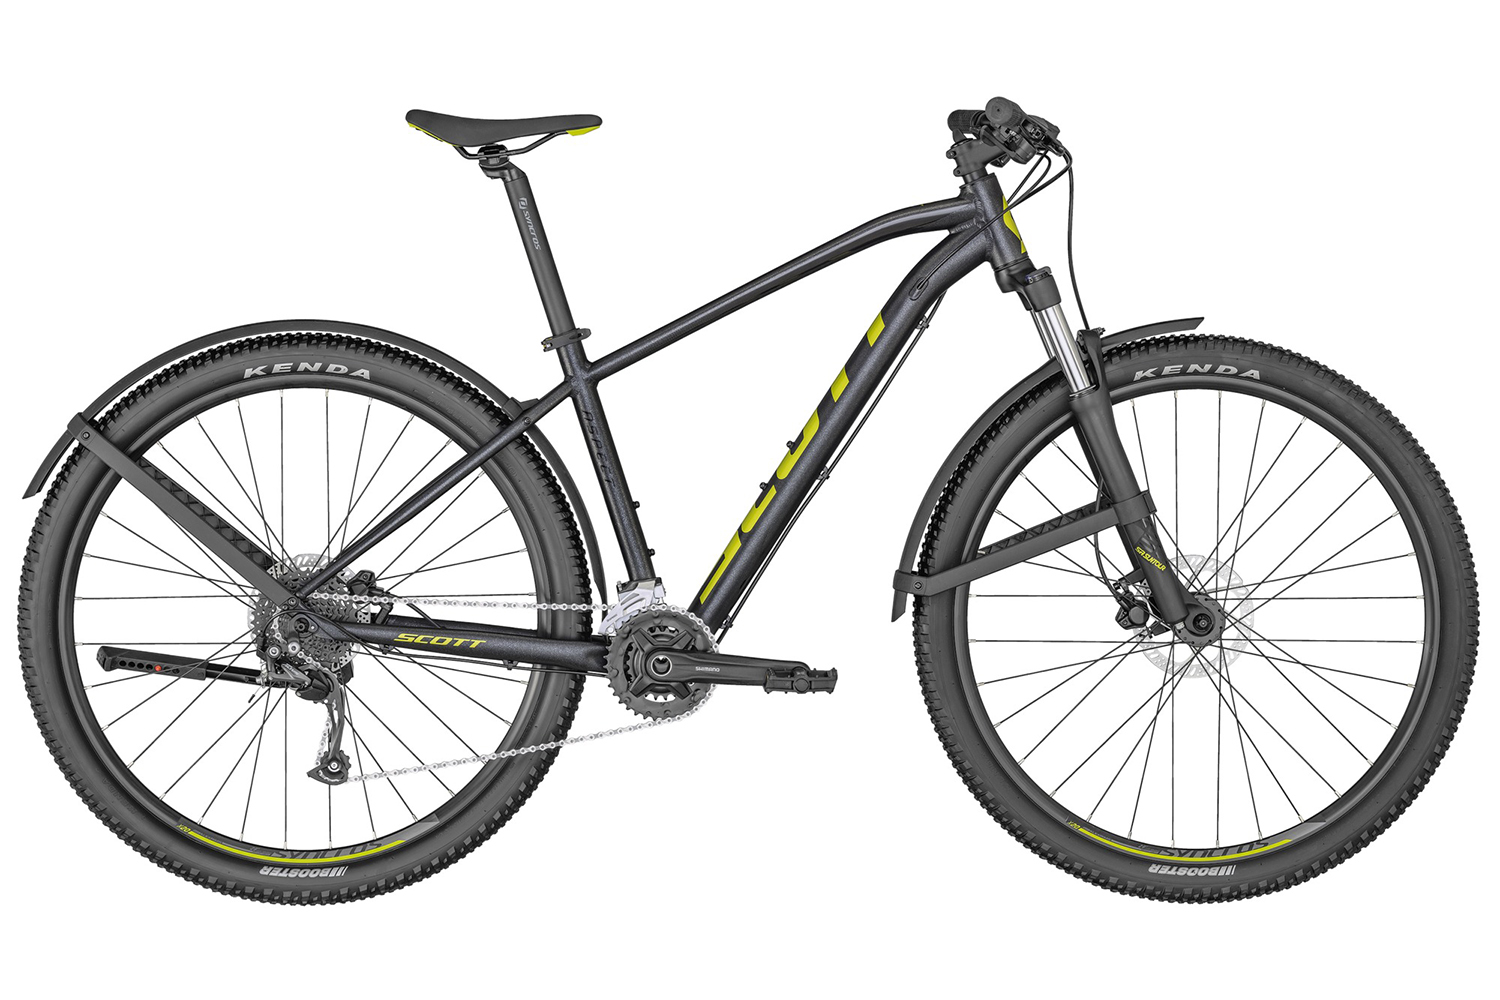  Отзывы о Горном велосипеде Scott Aspect 950 EQ 2022